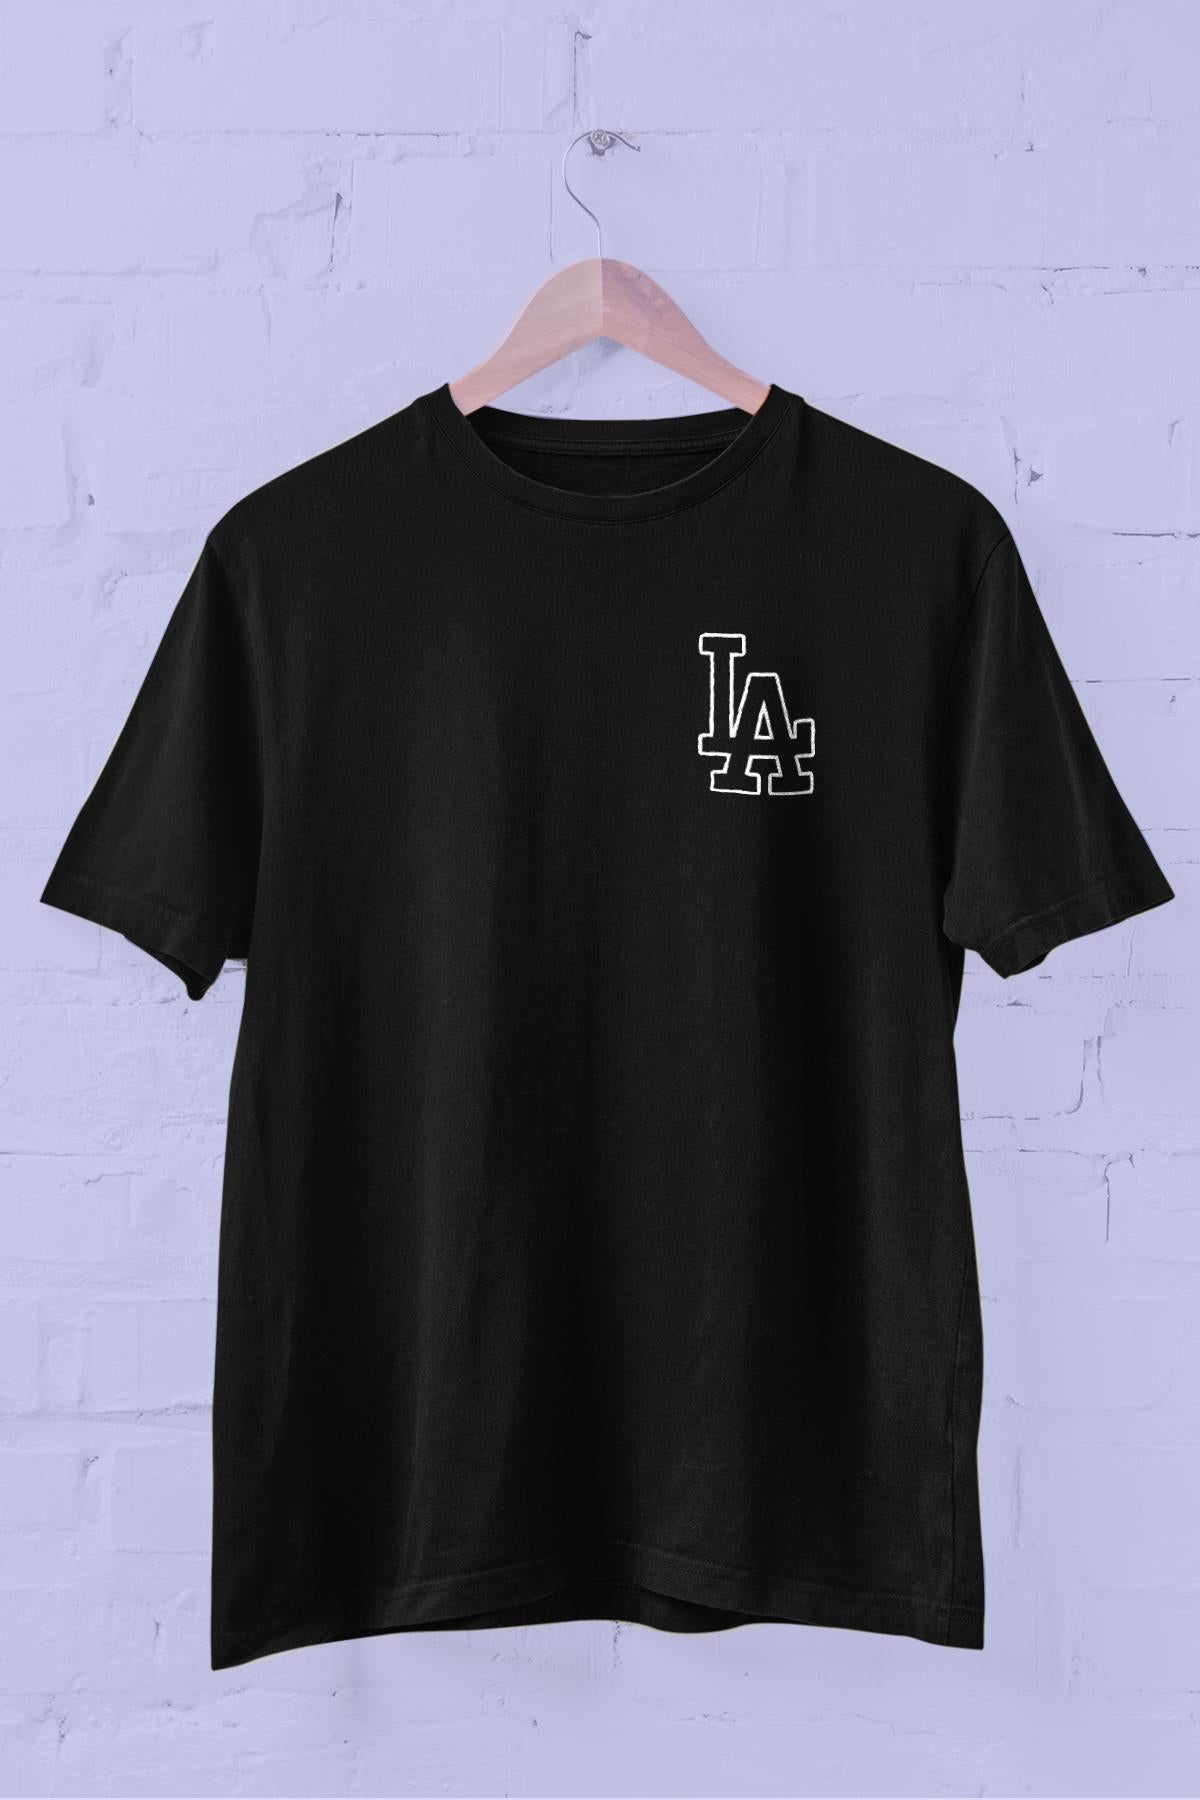 Small La Printed Crew Neck Men's T -shirt